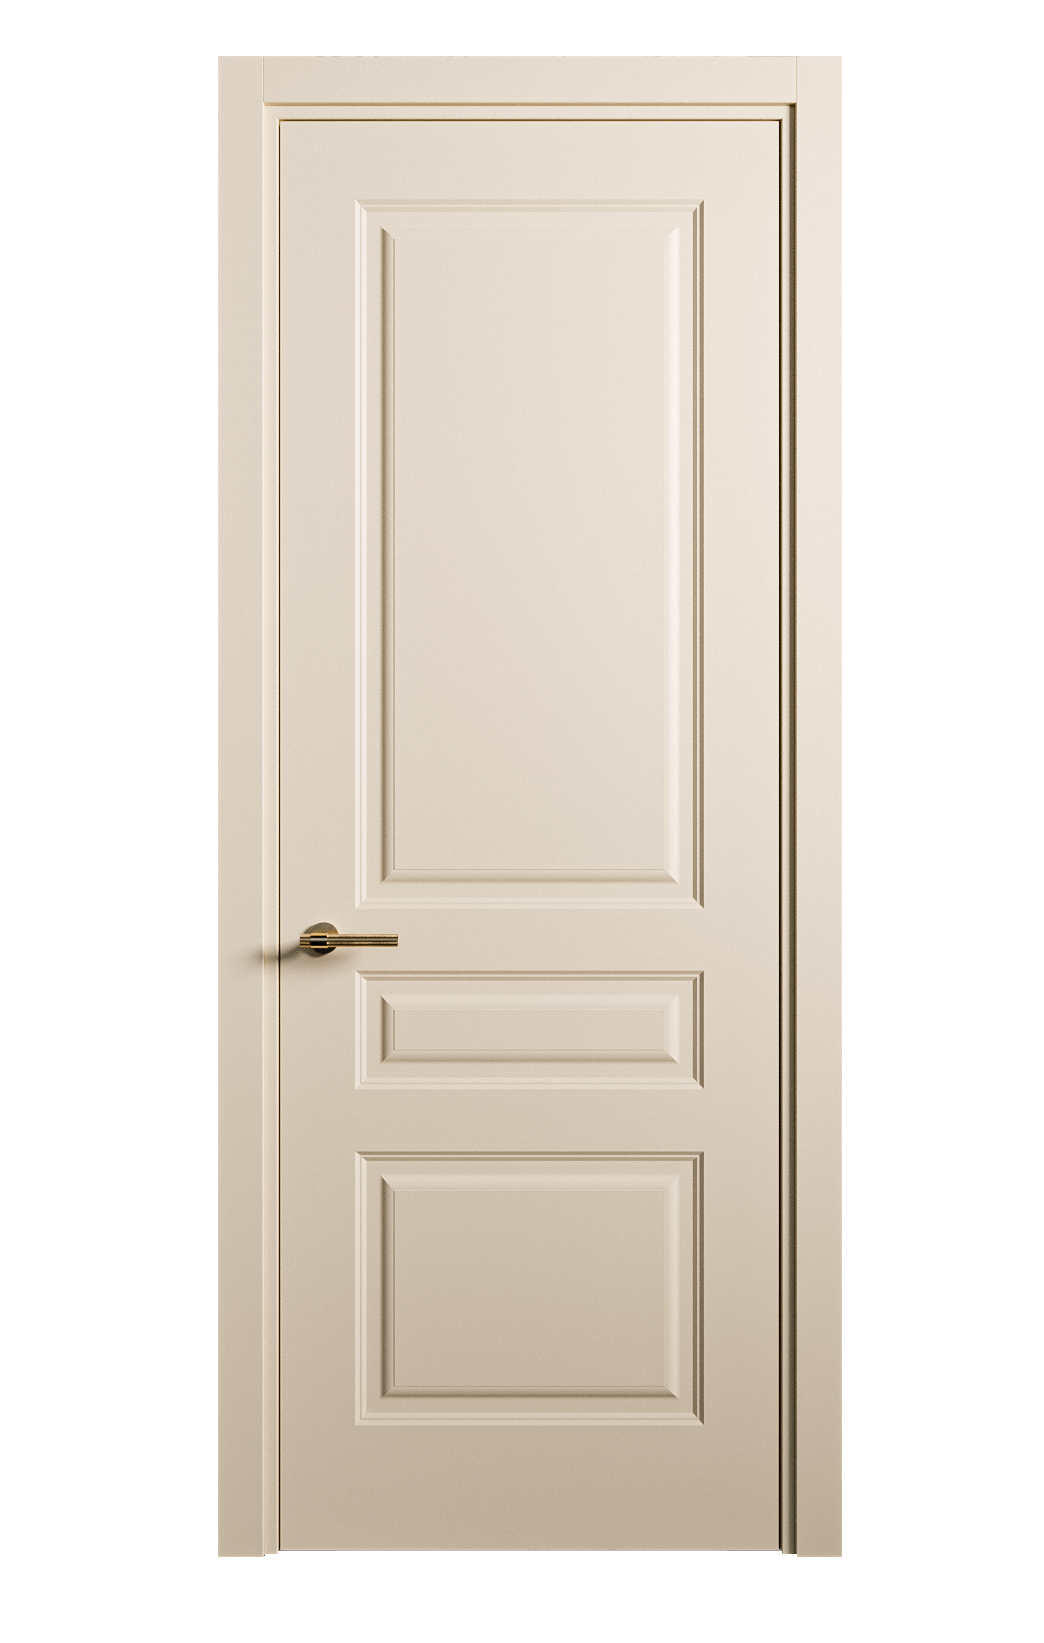 Межкомнатная дверь Вита-2 глухая эмаль ral 1015 26318